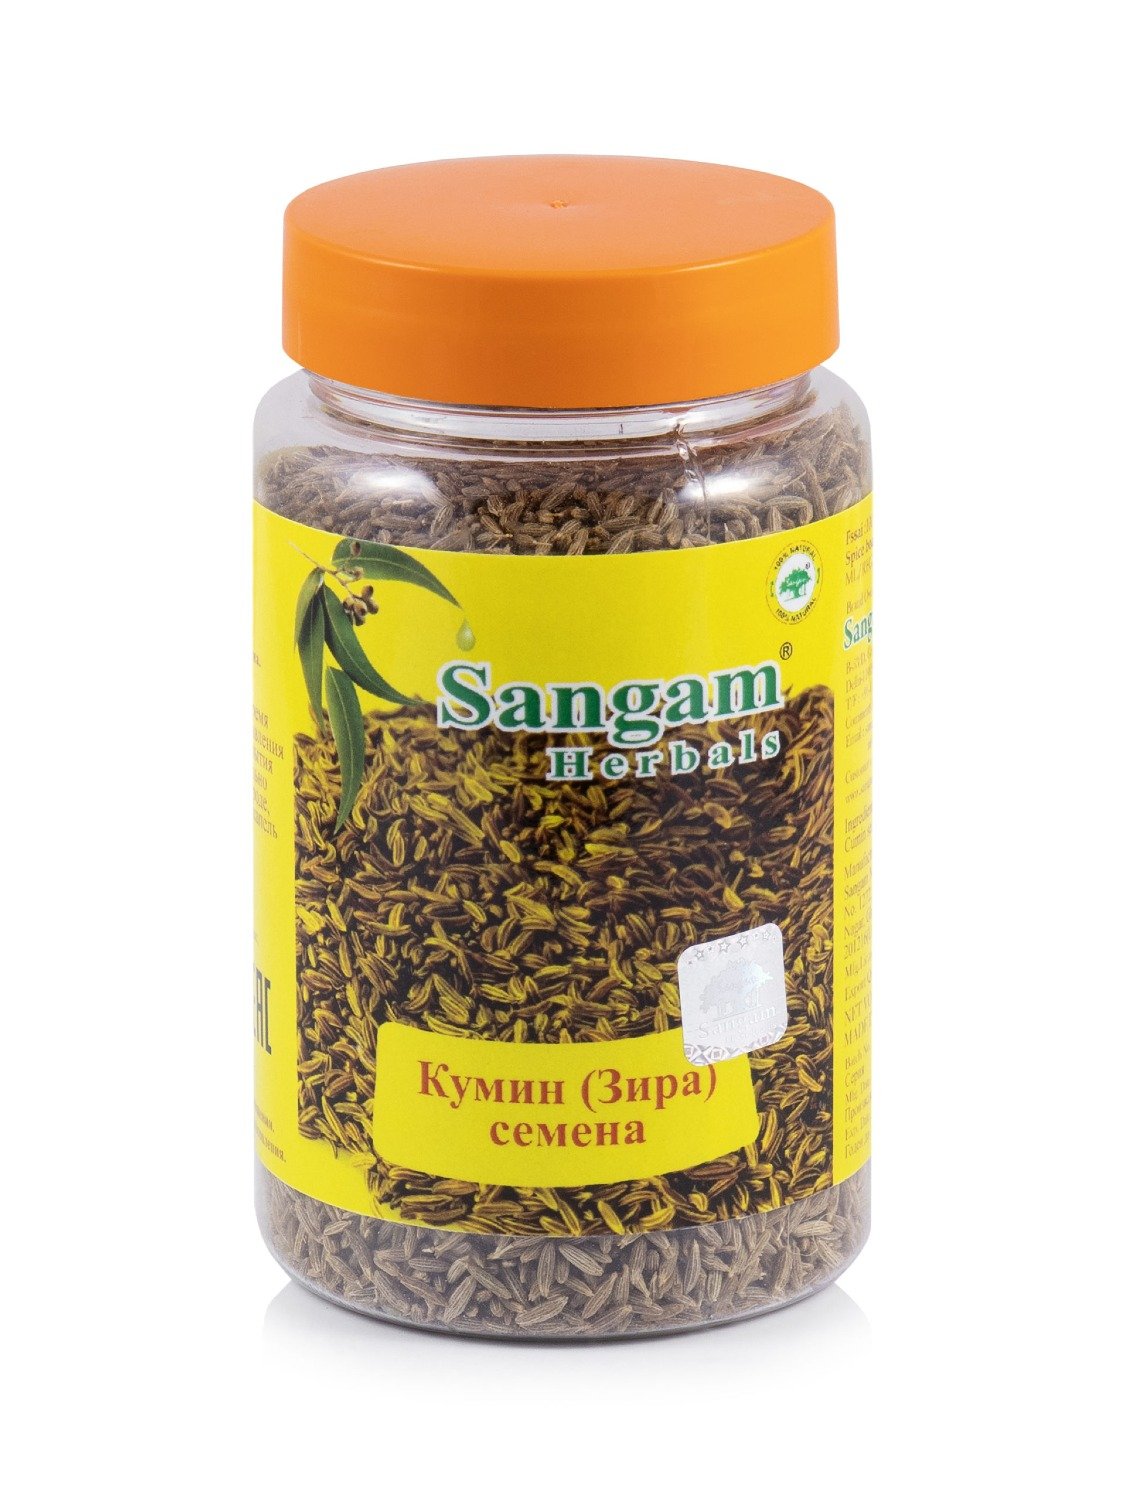 Купить Кумин (Зира), семена Sangam Herbals (120 г) в интернет-магазине #store#